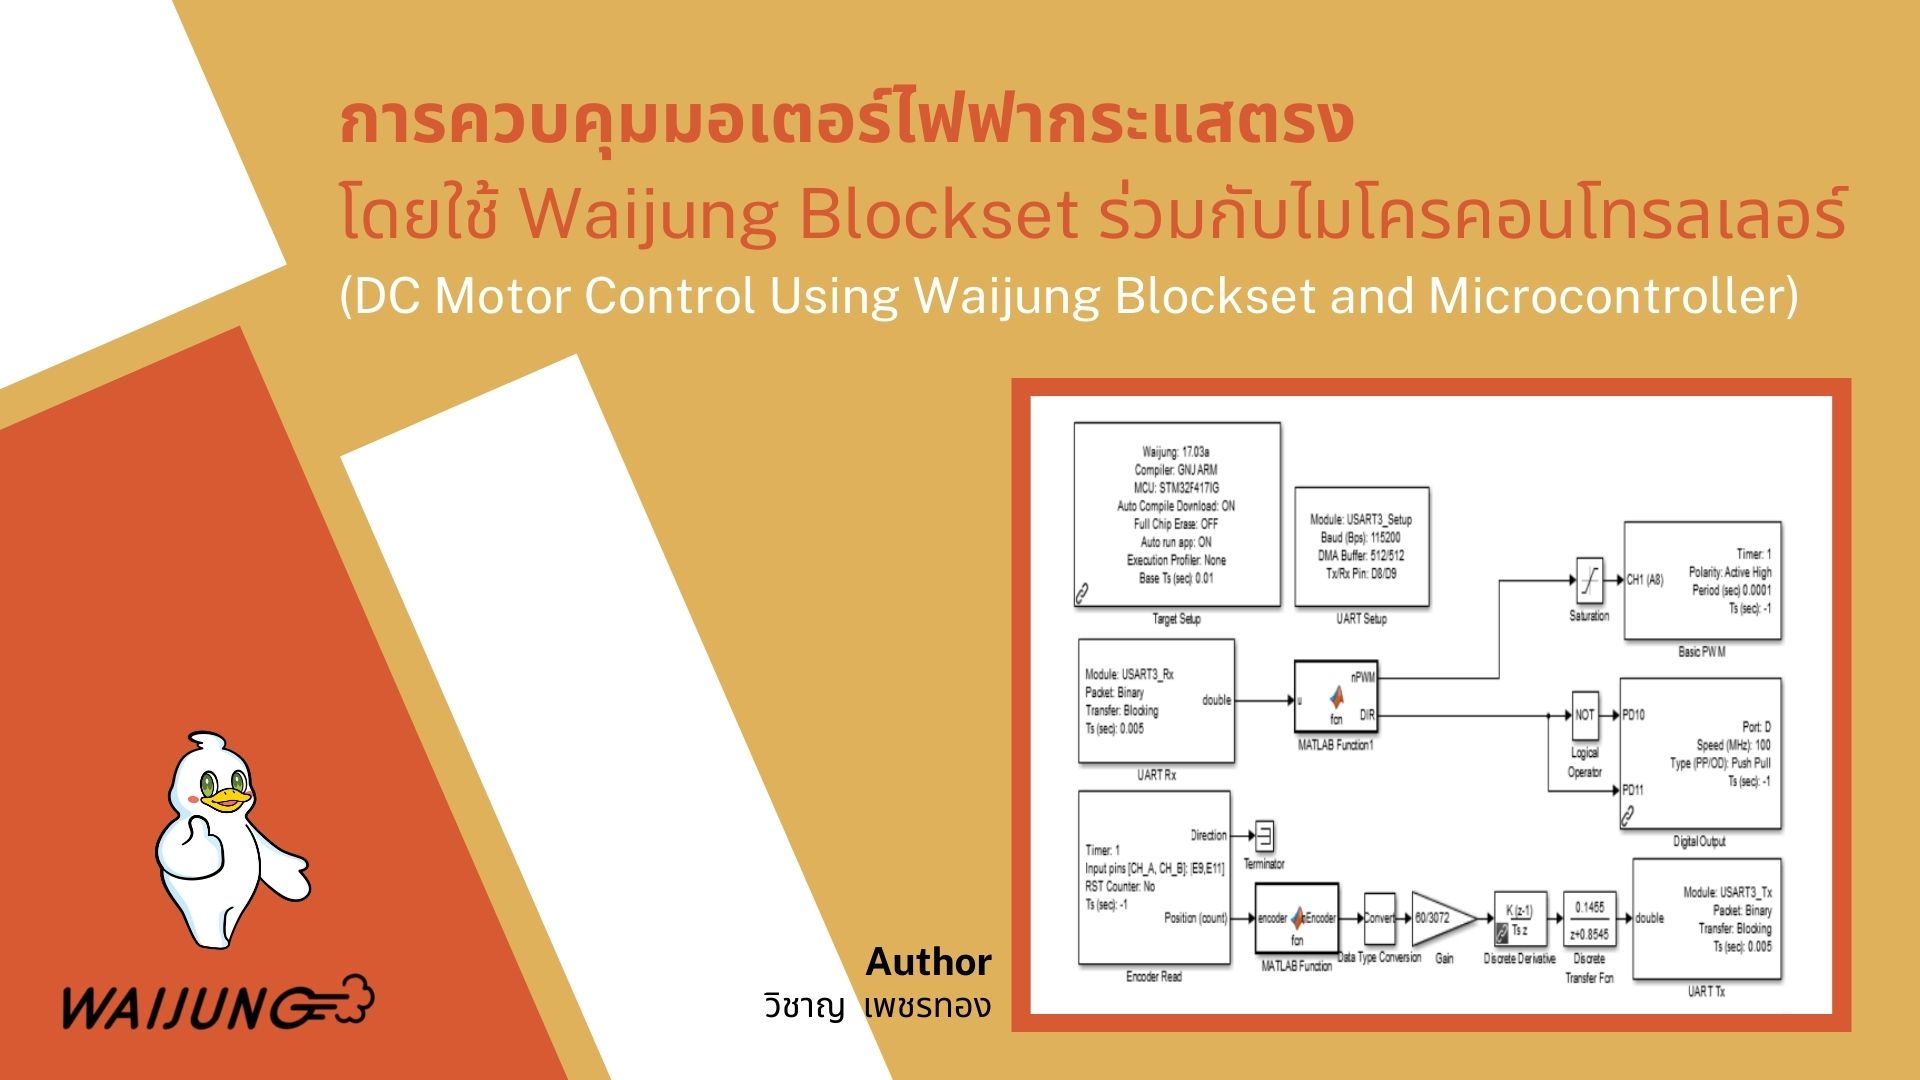 การควบคุมมอเตอร์ไฟฟากระแสตรงโดยใช้ Waijung Blockset ร่วมกับไมโครคอนโทรลเลอร์ (DC Motor Control Using Waijung Blockset and Microcontroller)